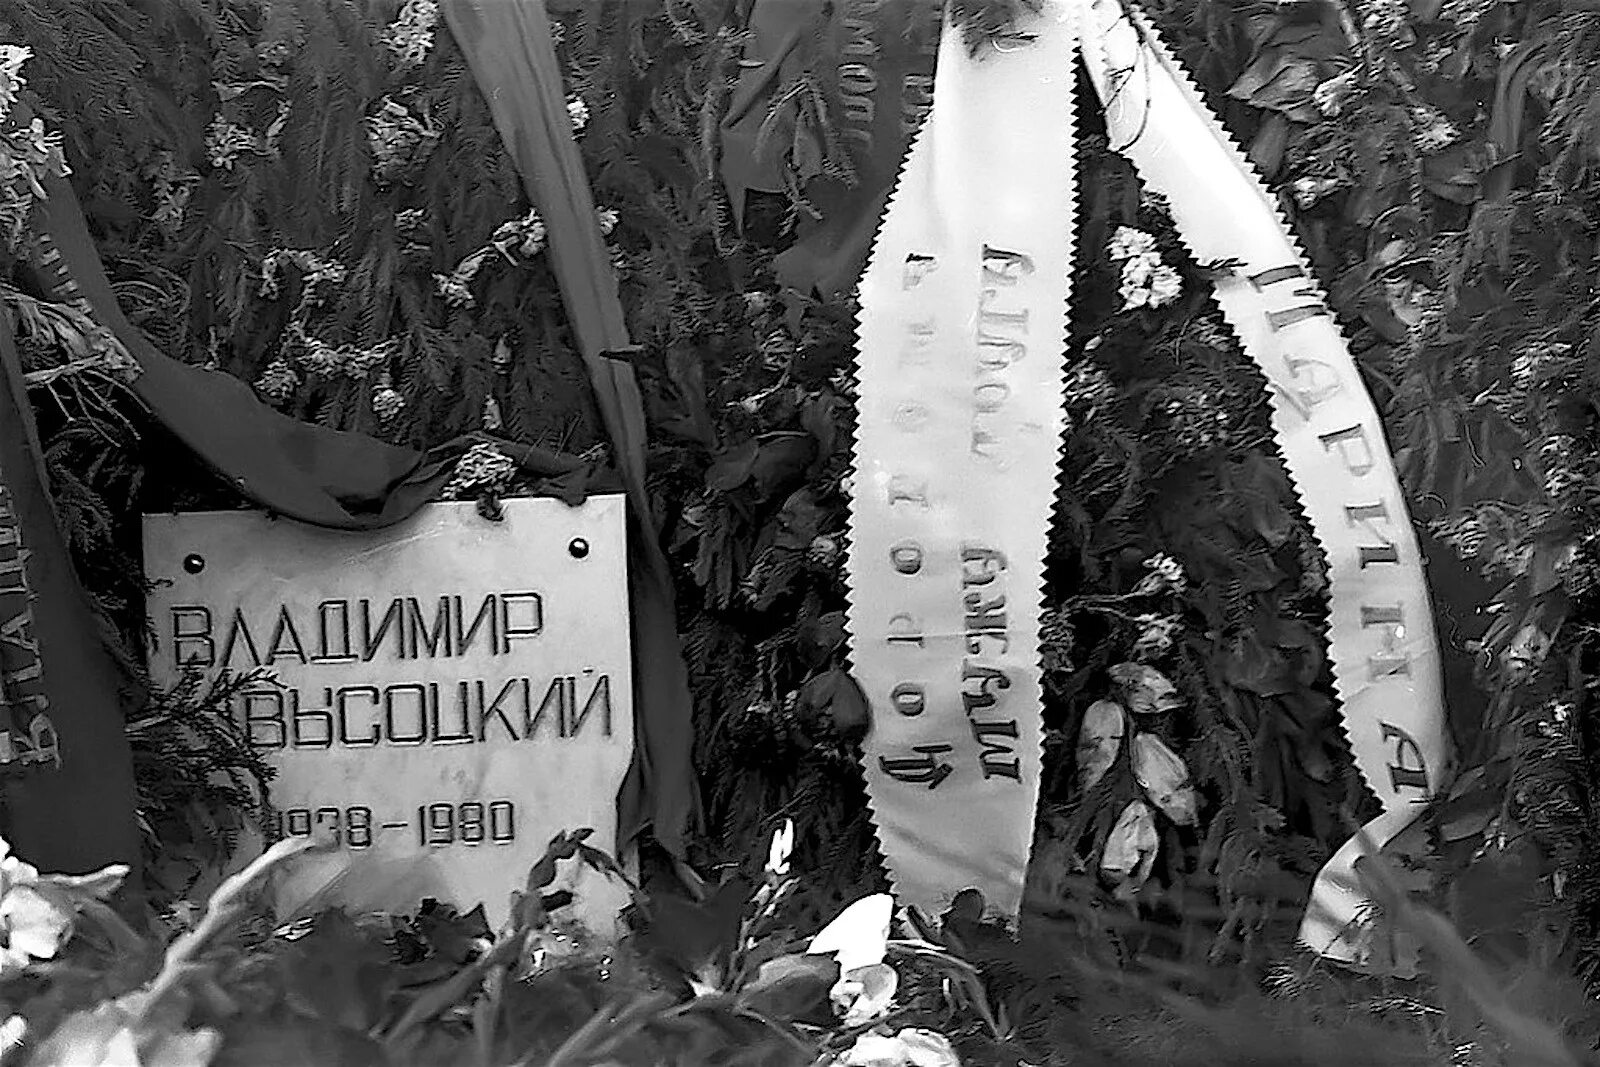 25 Июля 1980 Высоцкий похороны. Москва 1980 похороны Высоцкого. Запрещены прощания